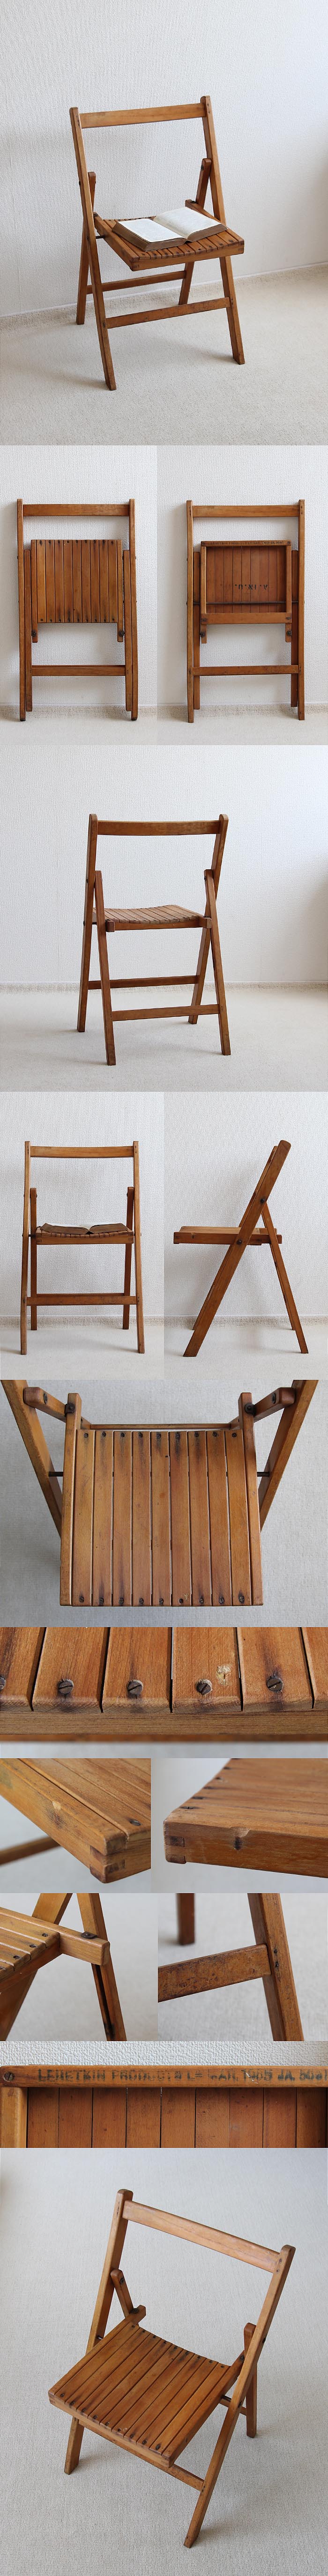 イギリス アンティーク フォールディングチェア 古木 木製 インテリア 家具「折りたたみ椅子」P-372